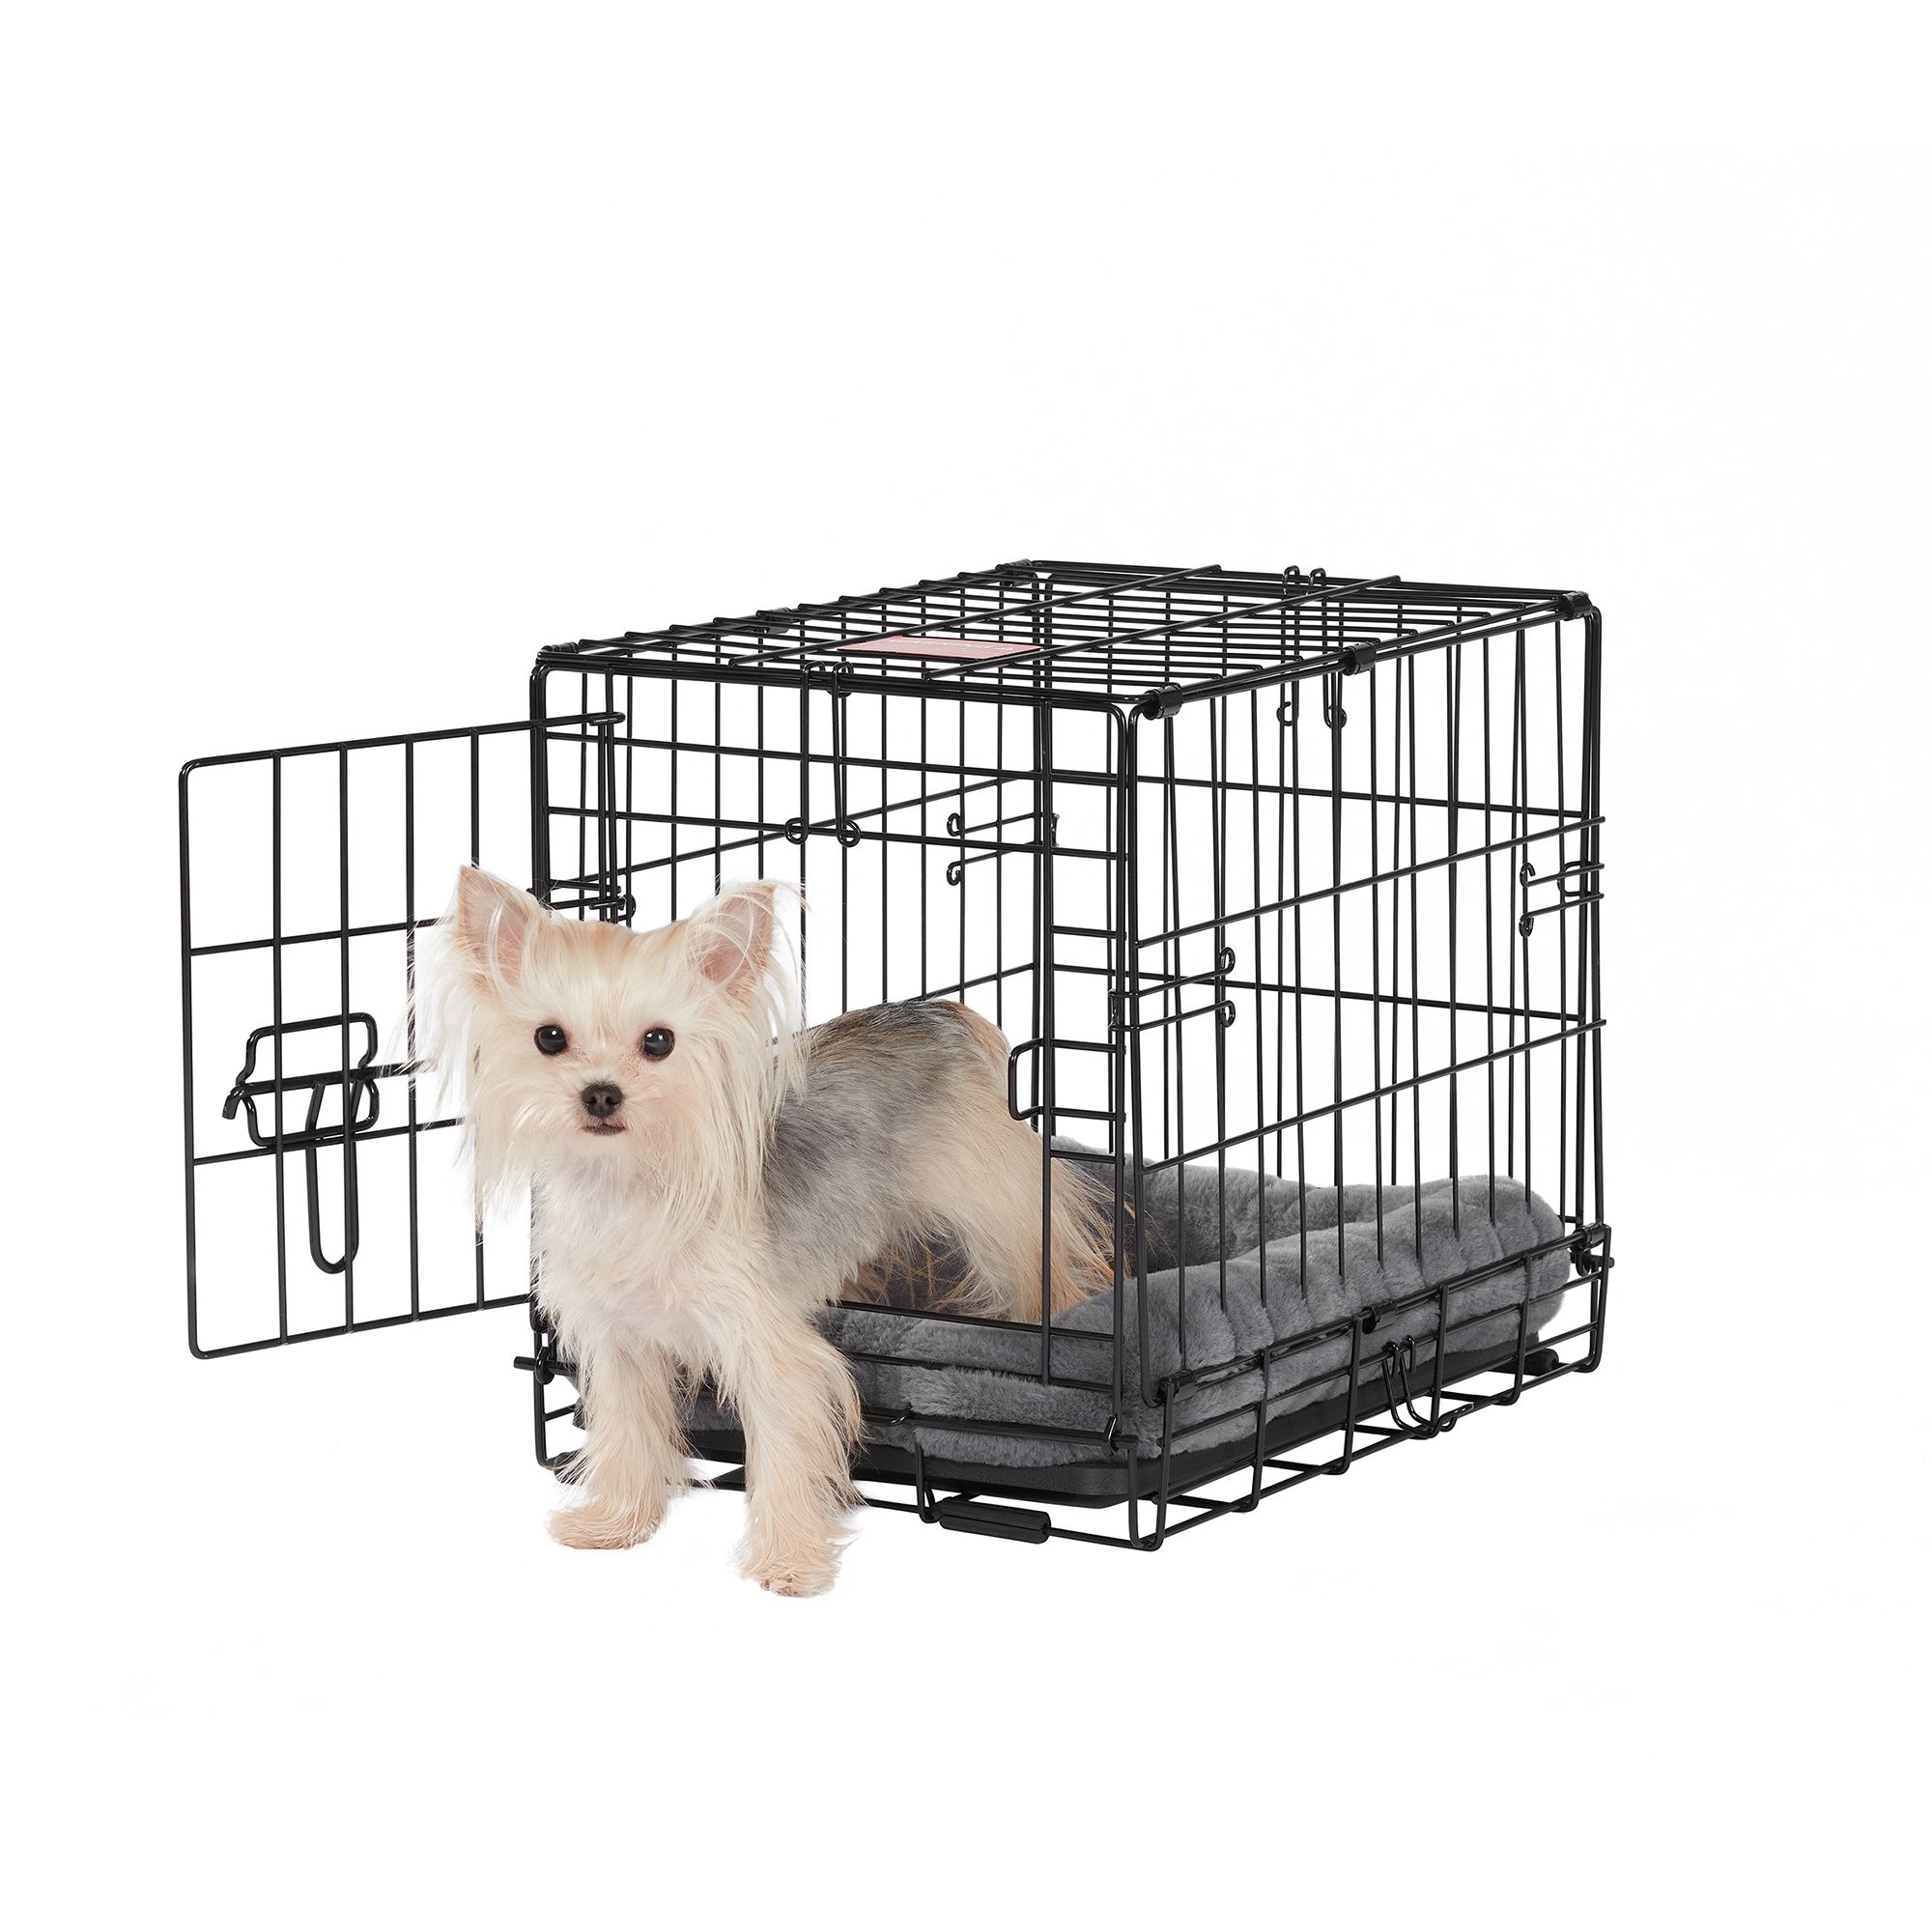 Dog Crates - Dog Cages & Kennels | PetSmart